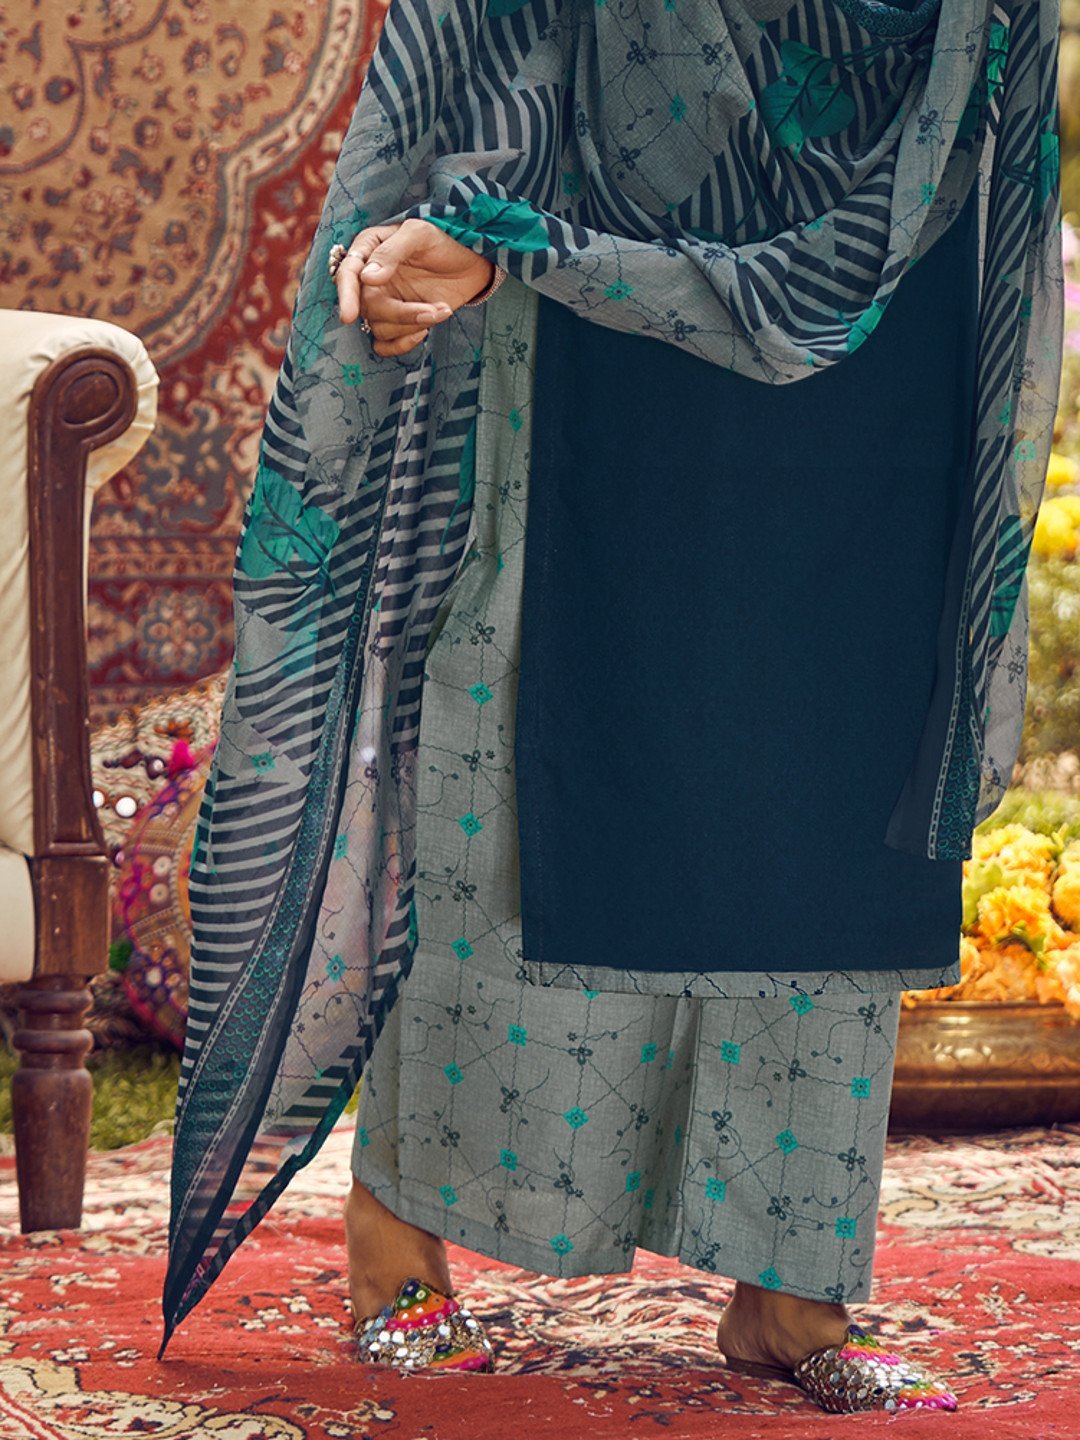 Unstitched Cotton Embroidered Blue Salwar Kameez Suit Set - Stilento